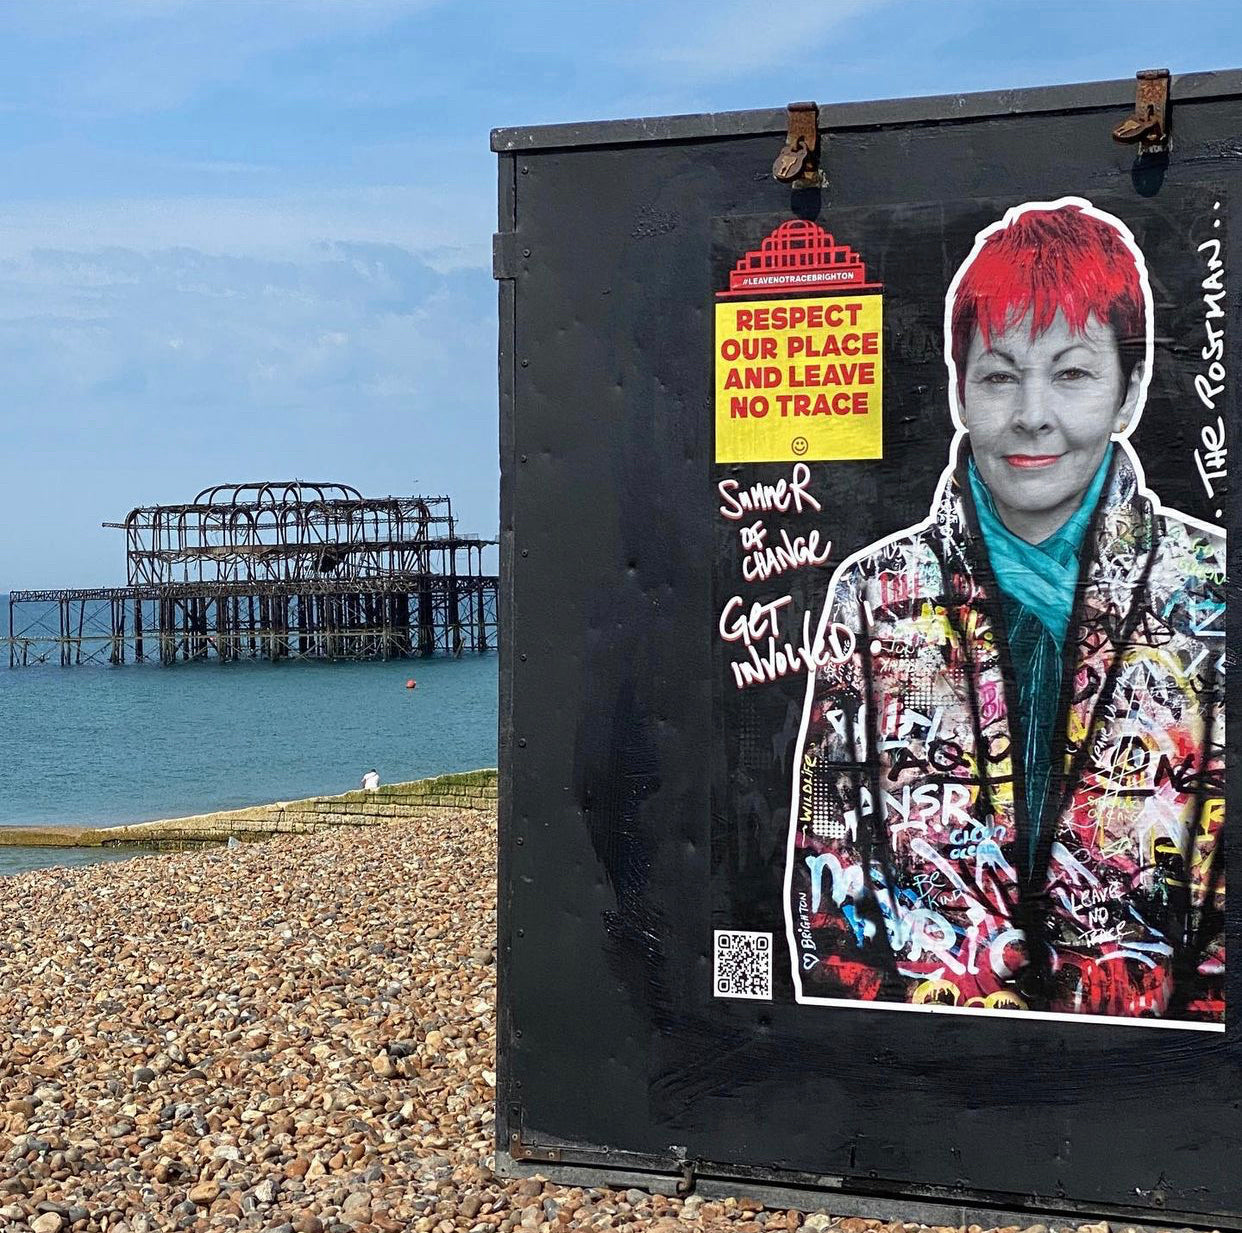 Leave No Trace - Beach Campaign Brighton 2021